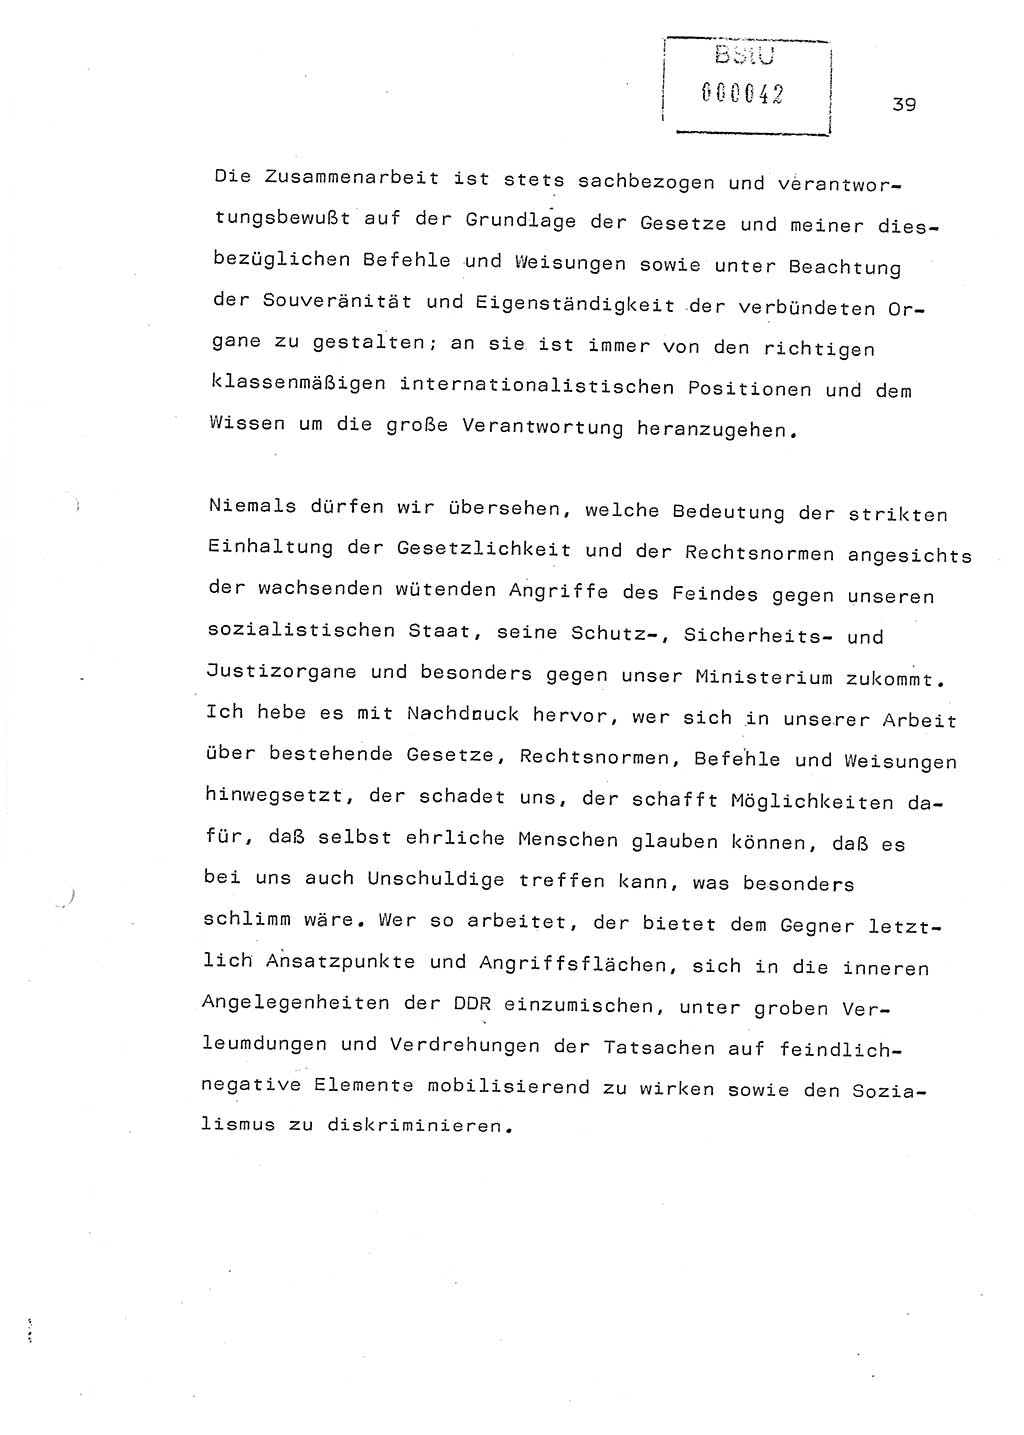 Referat (Generaloberst Erich Mielke) auf der Zentralen Dienstkonferenz am 24.5.1979 [Ministerium für Staatssicherheit (MfS), Deutsche Demokratische Republik (DDR), Der Minister], Berlin 1979, Seite 39 (Ref. DK DDR MfS Min. /79 1979, S. 39)